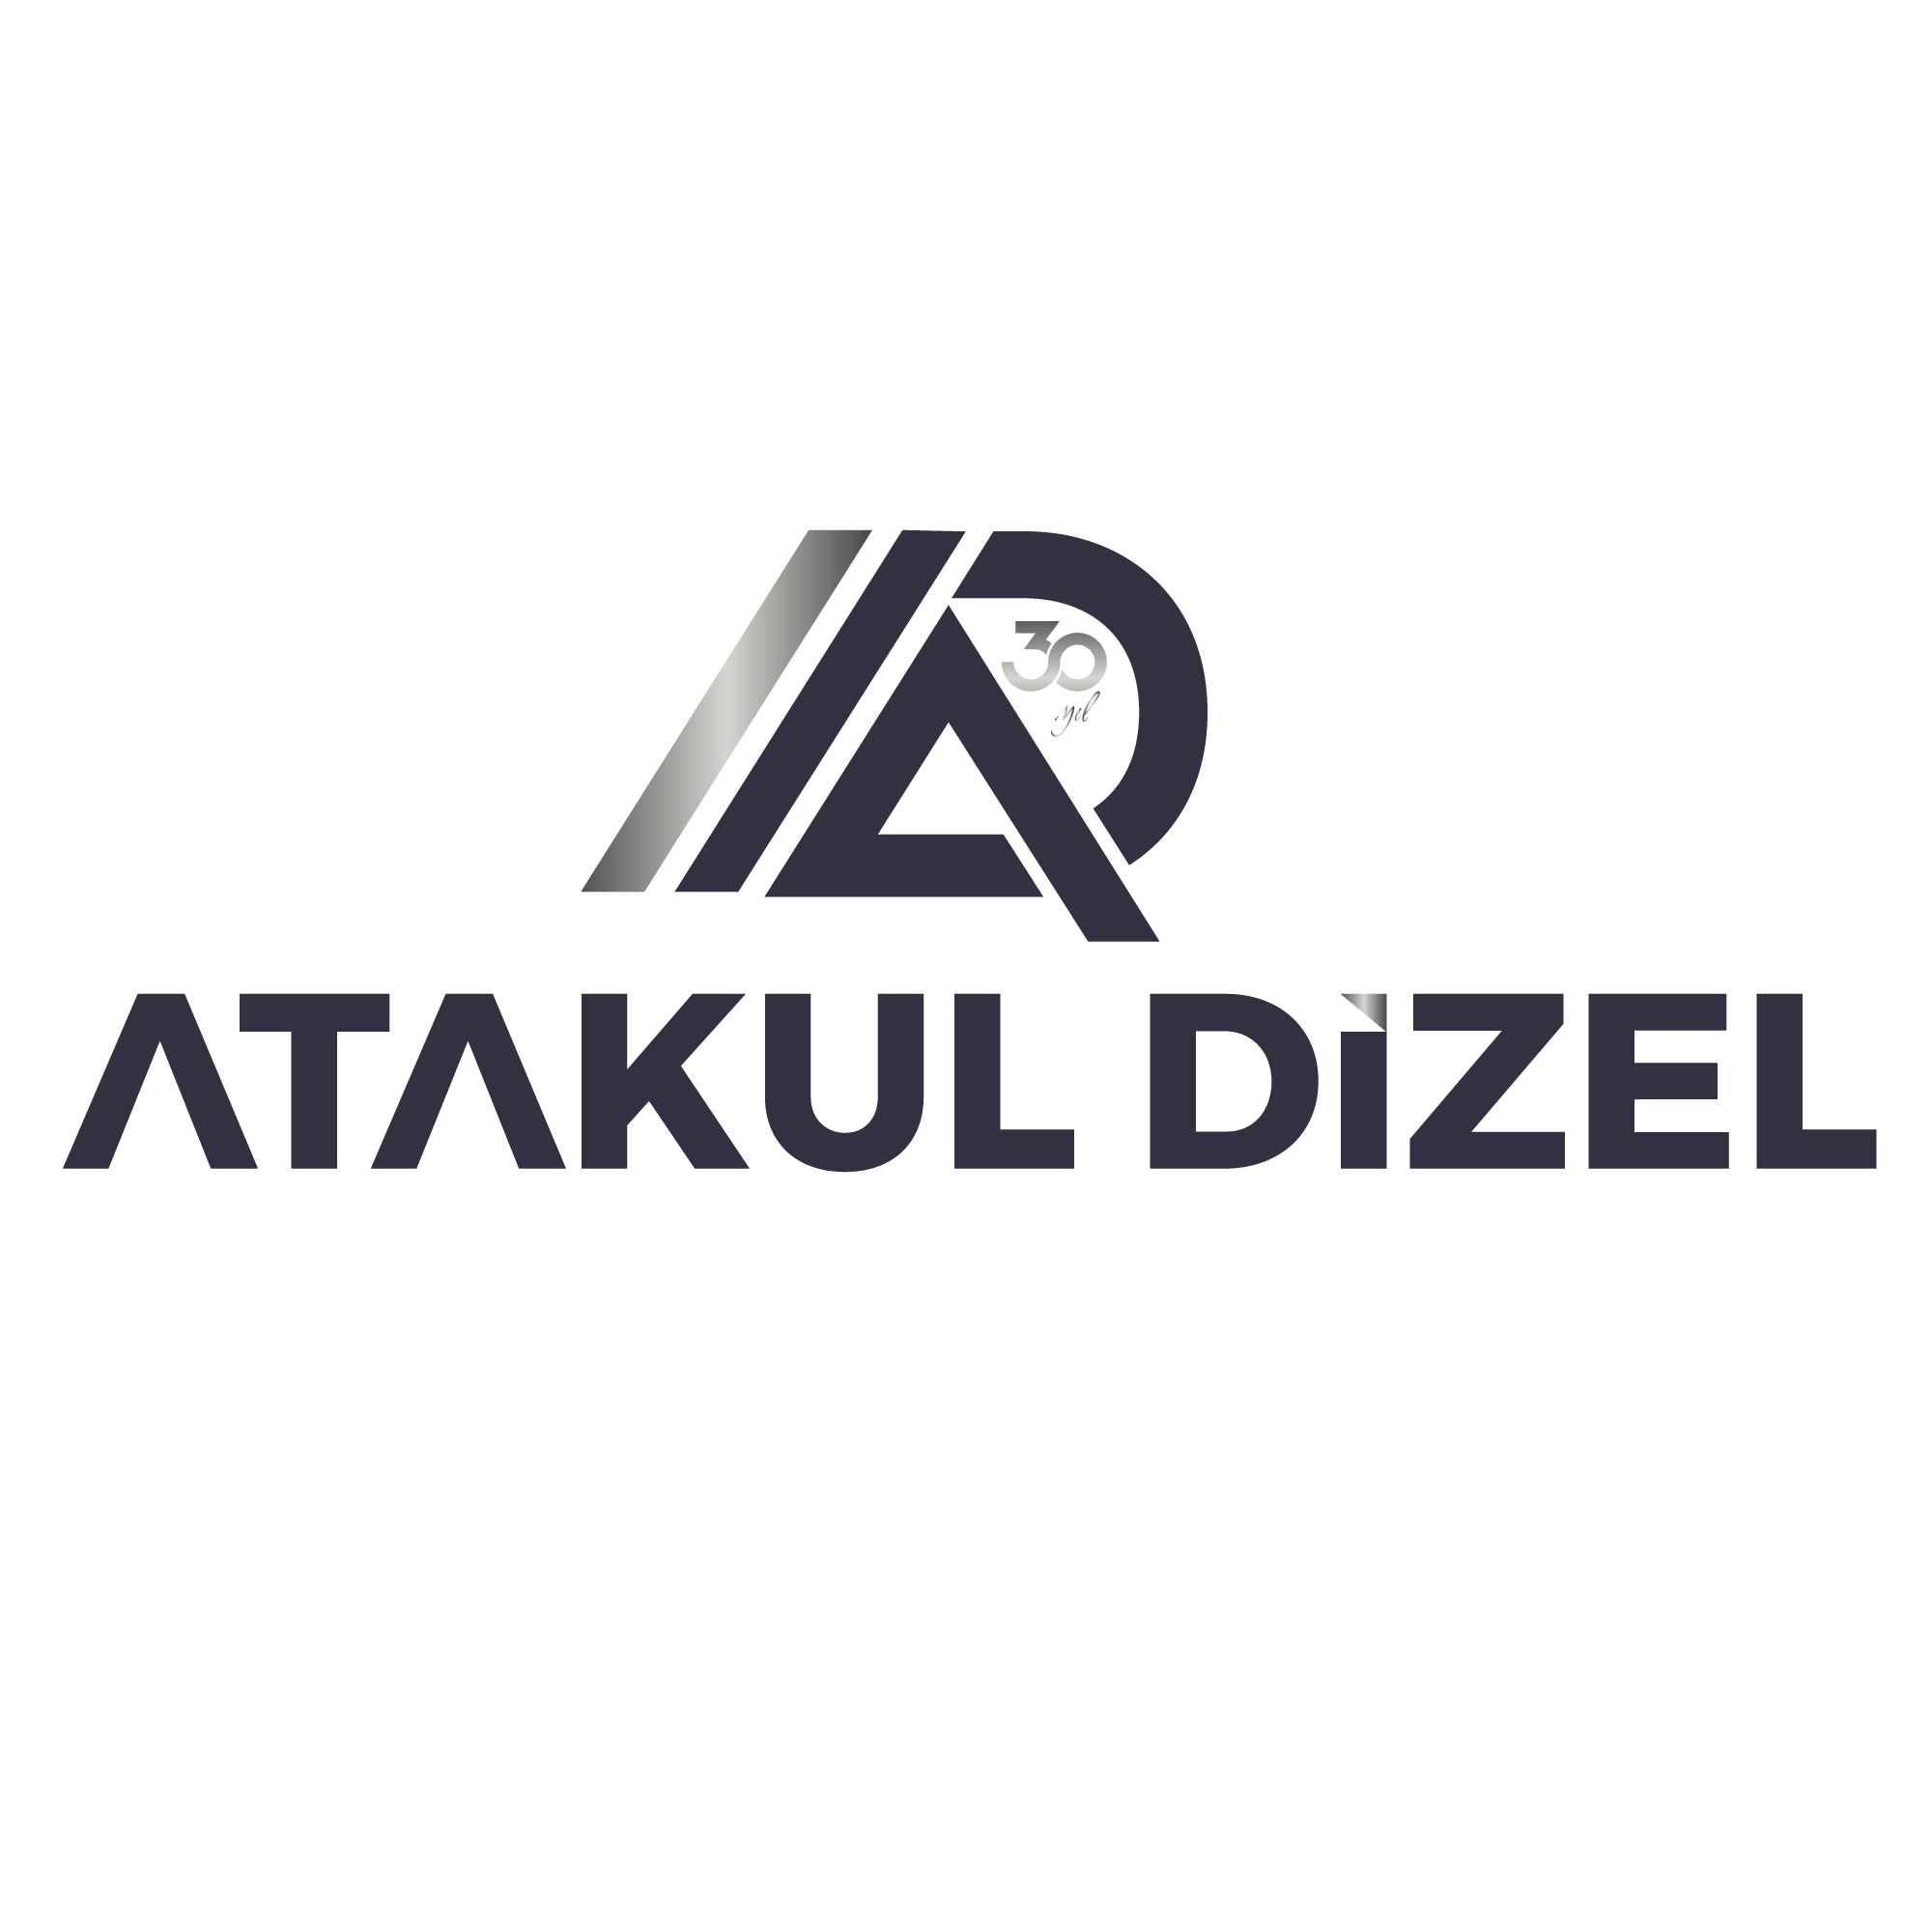 Atakul